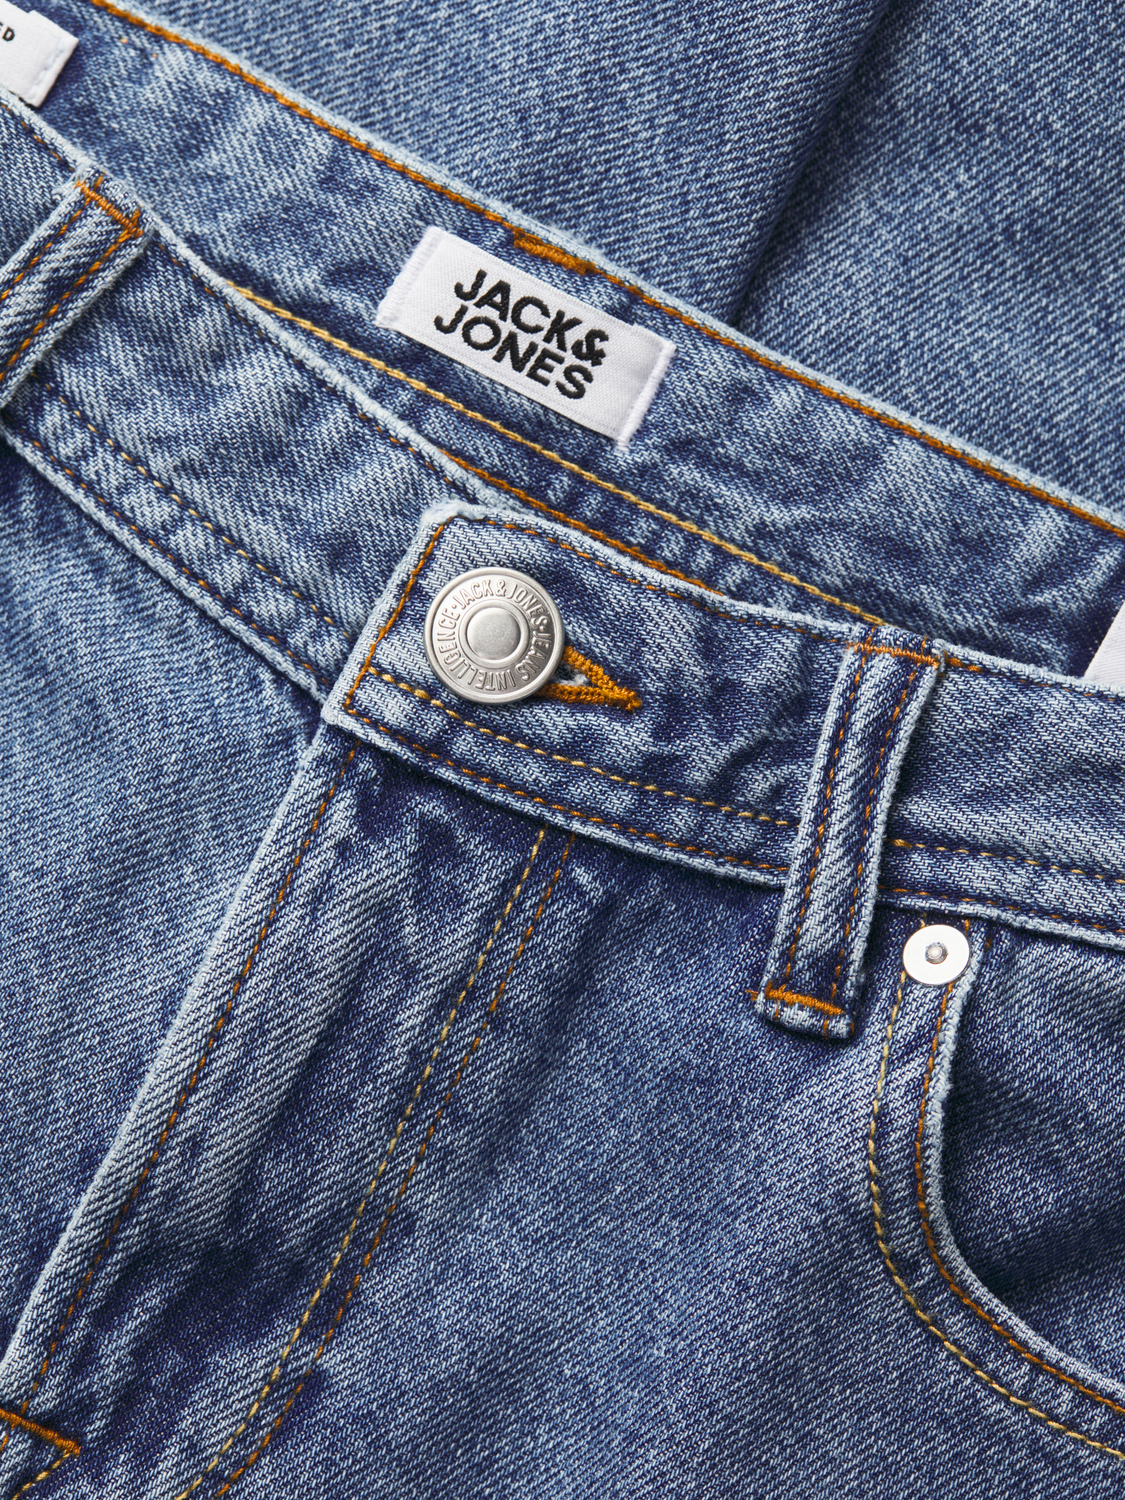 Jack & Jones JJICHRIS JJORIGINAL SQ 735 Relaxed Fit Jeans Mini -Blue Denim - 12260582